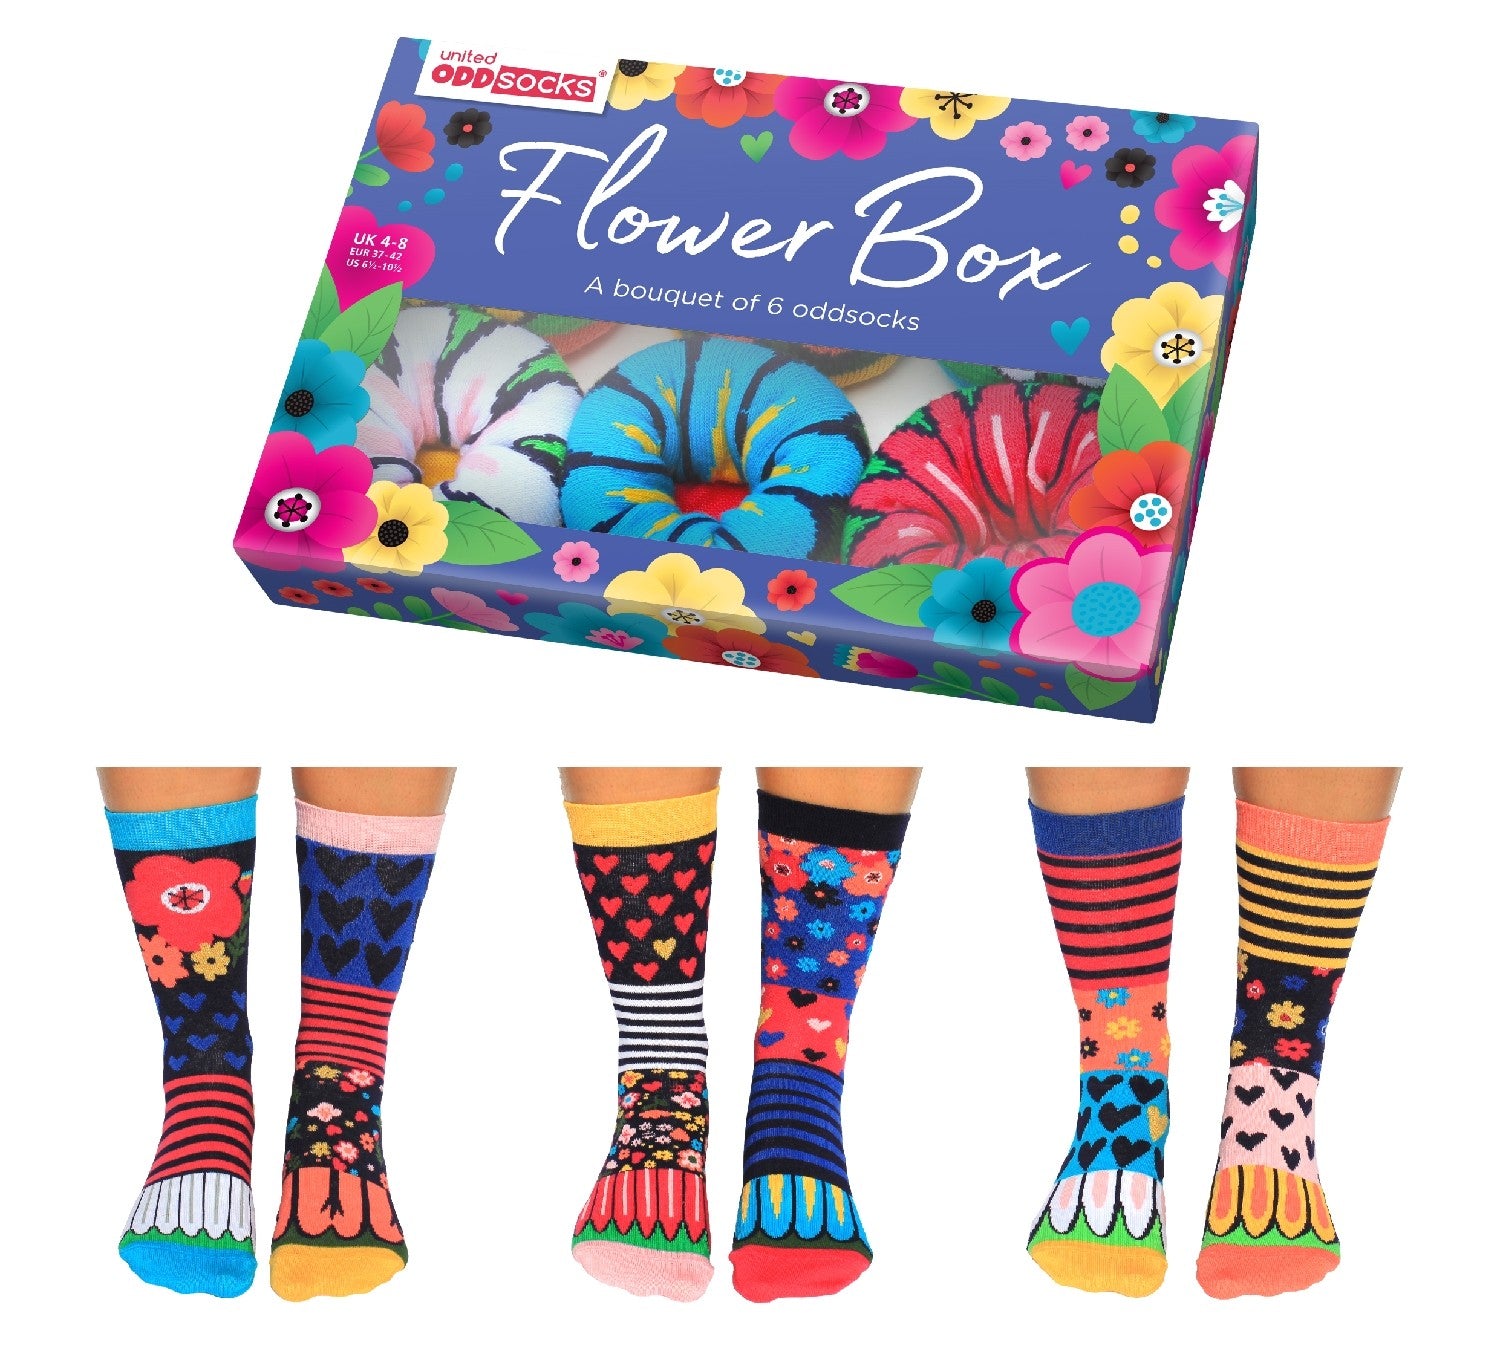 United Oddsocks Flower Box Bouquet de chaussettes dépareillées United Oddsocks